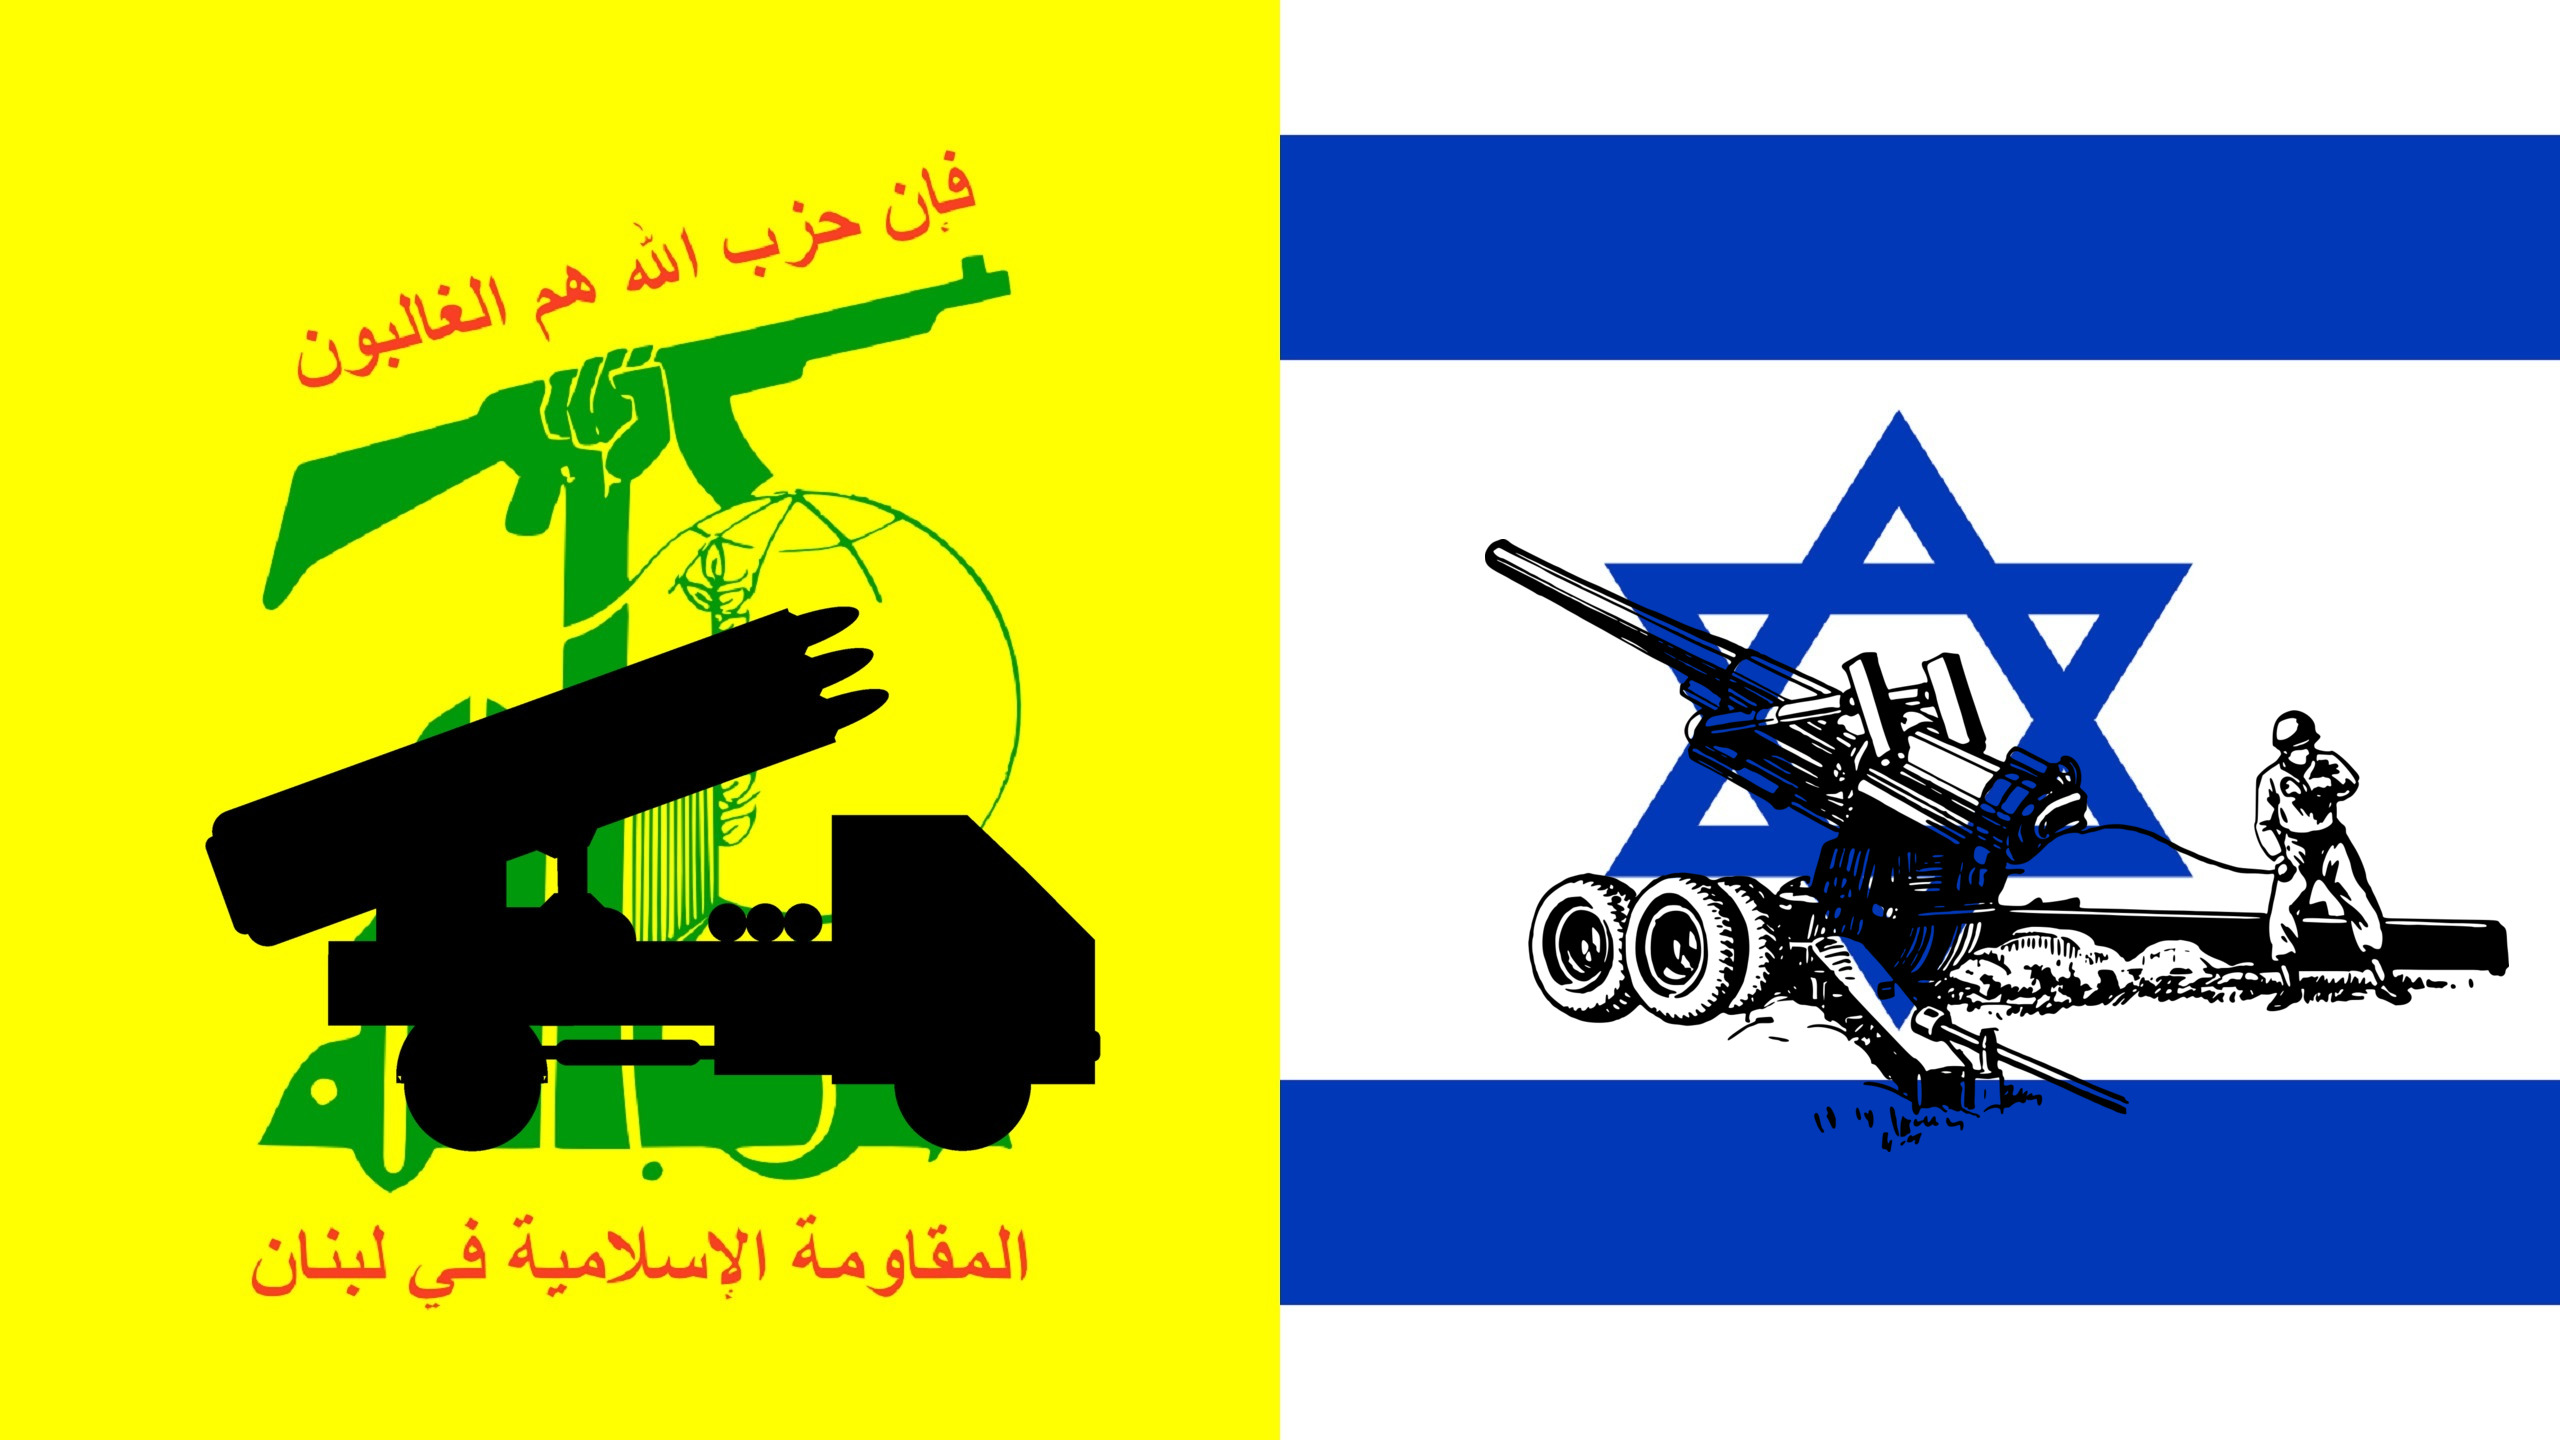 İsrail, Hizbullah'la Tam Bir Savaşa Yaklaşıyor